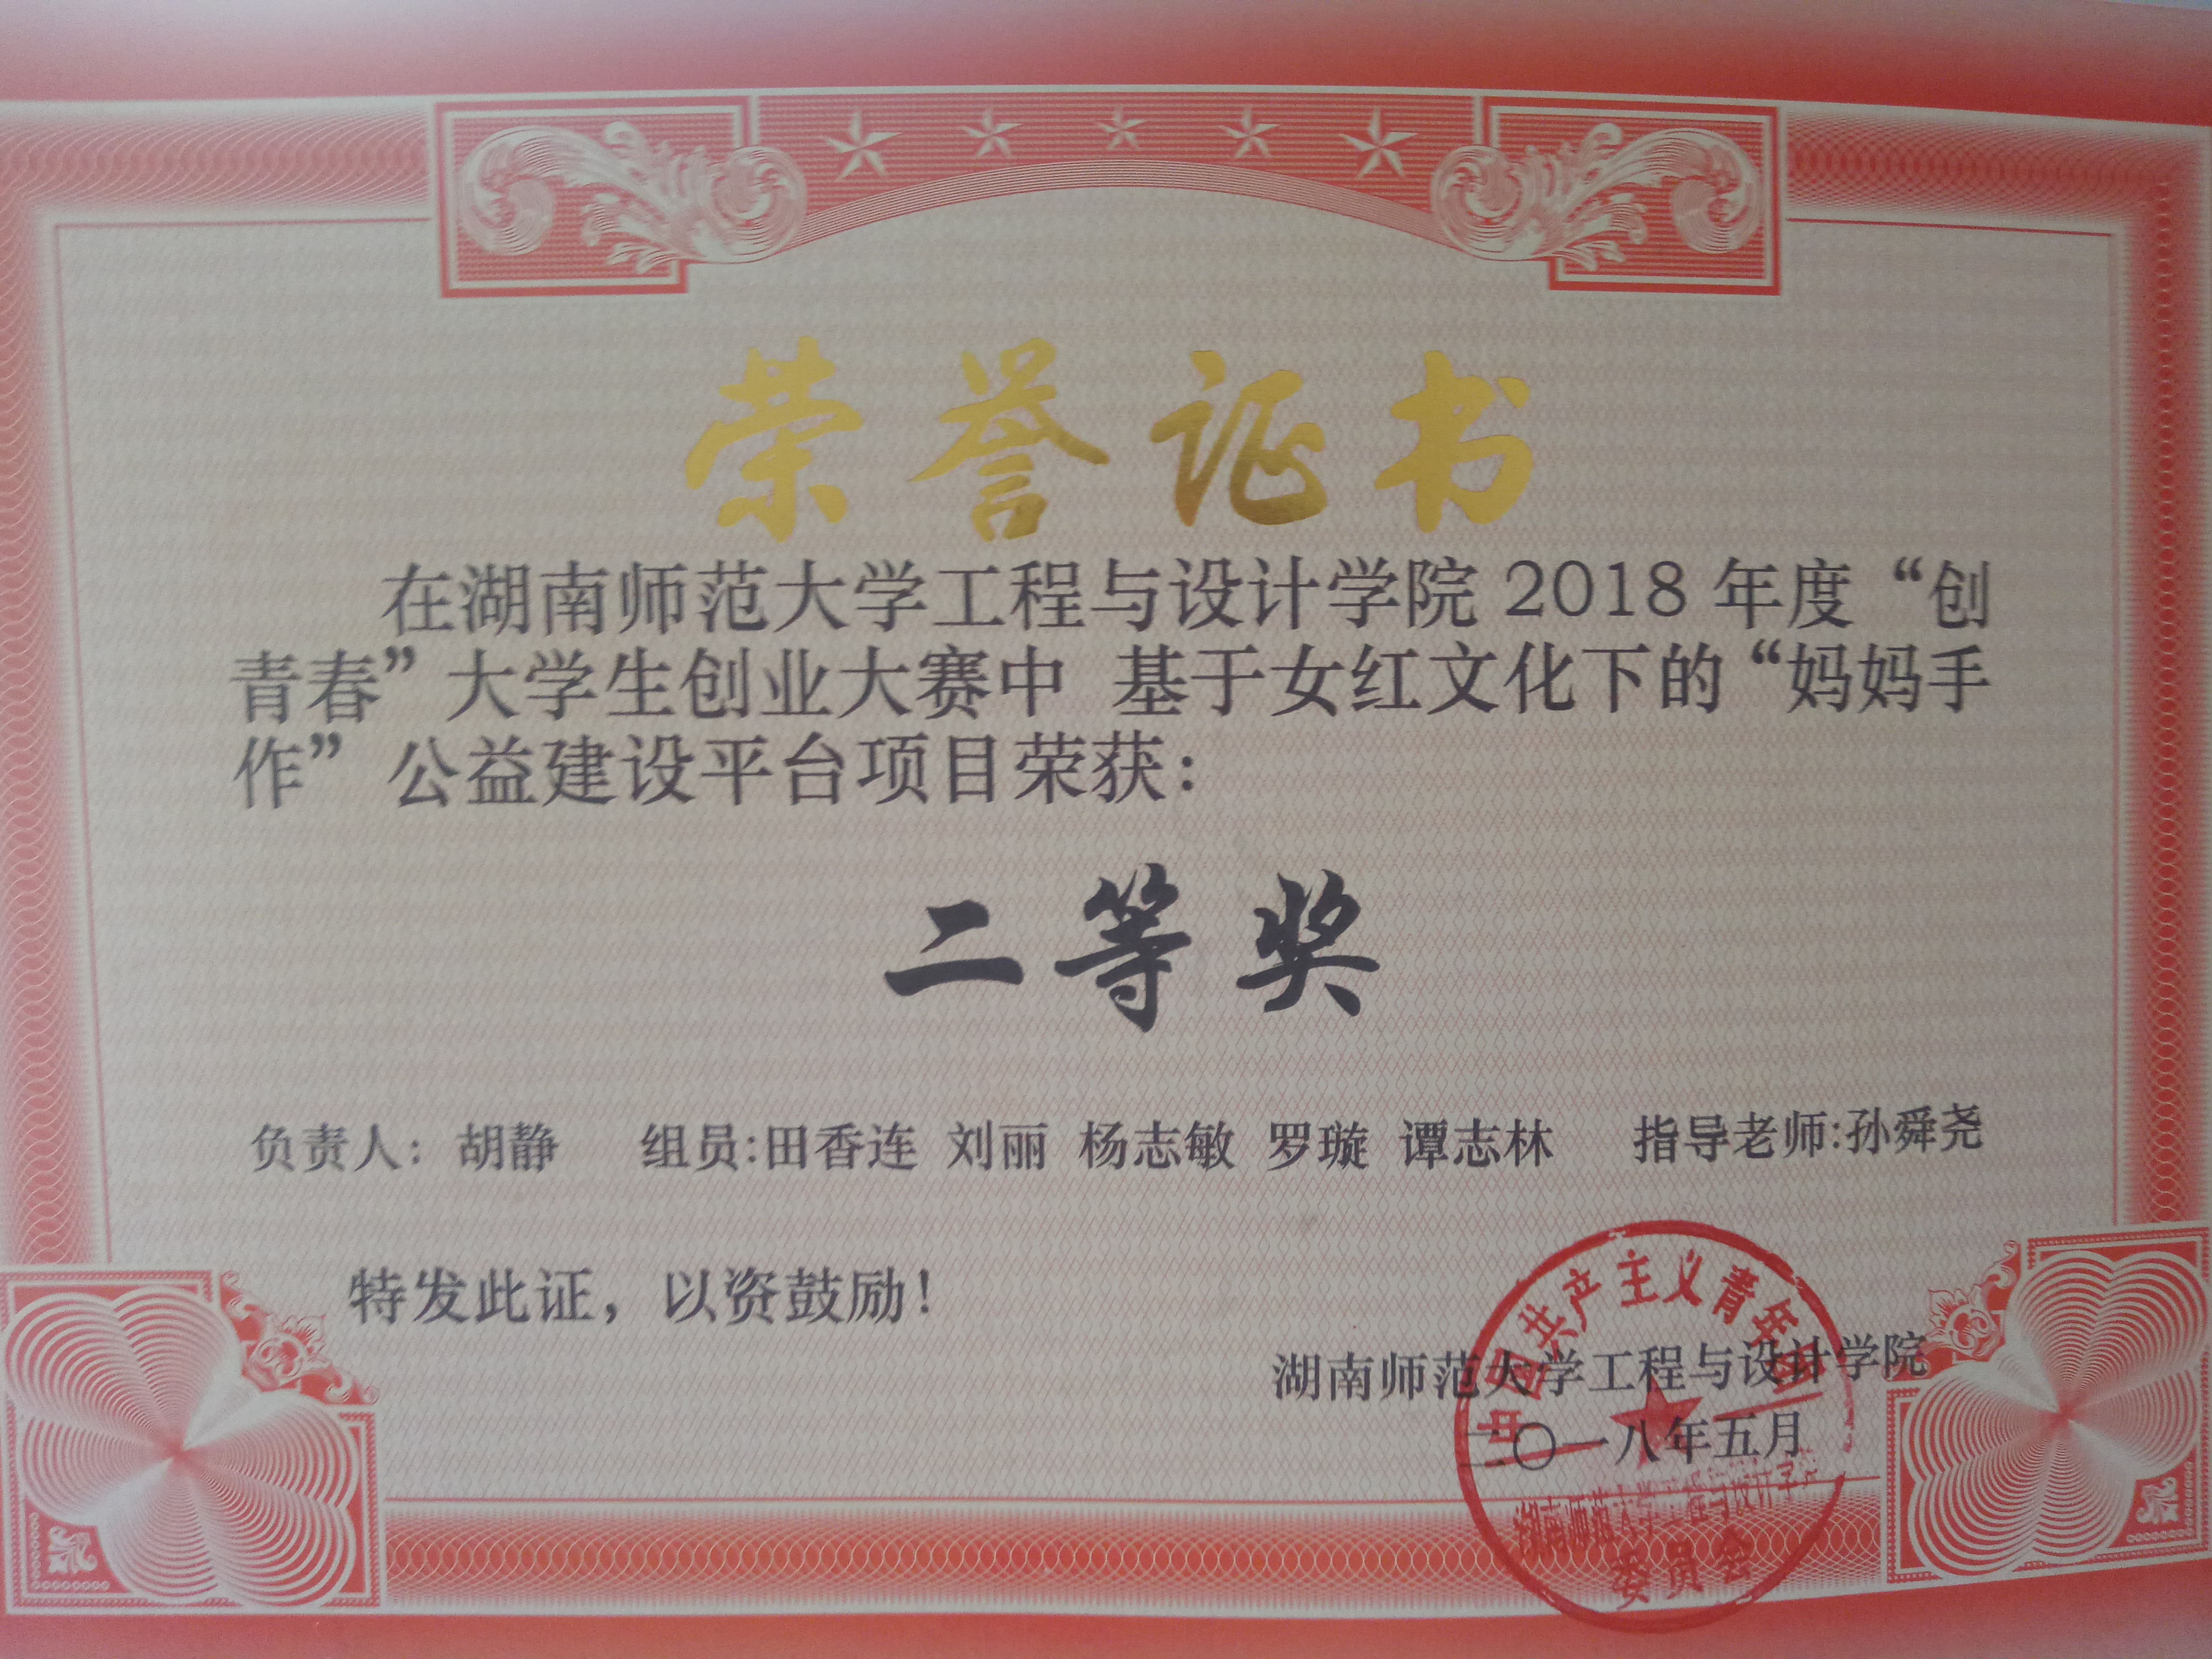 荣获湖南师范大学工程与设计学院“创青春”大学生创业大赛二等奖